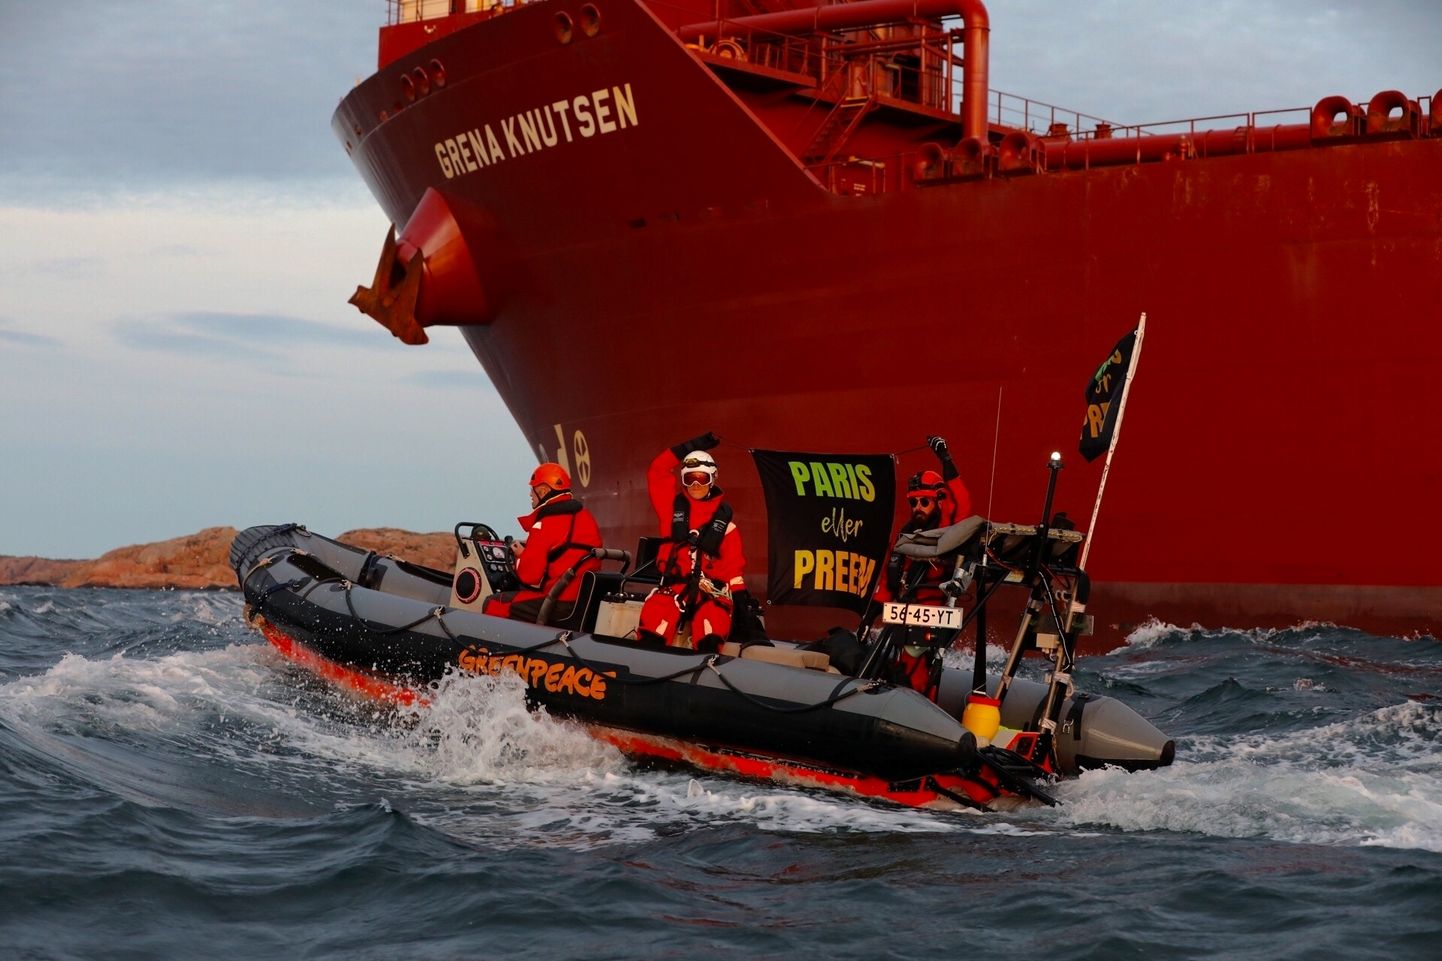 Greenpeace'i aktivistid püüavad blokeerida naftatankeri lähenemist Lysekili naftatöötlemistehasele Rootsis.